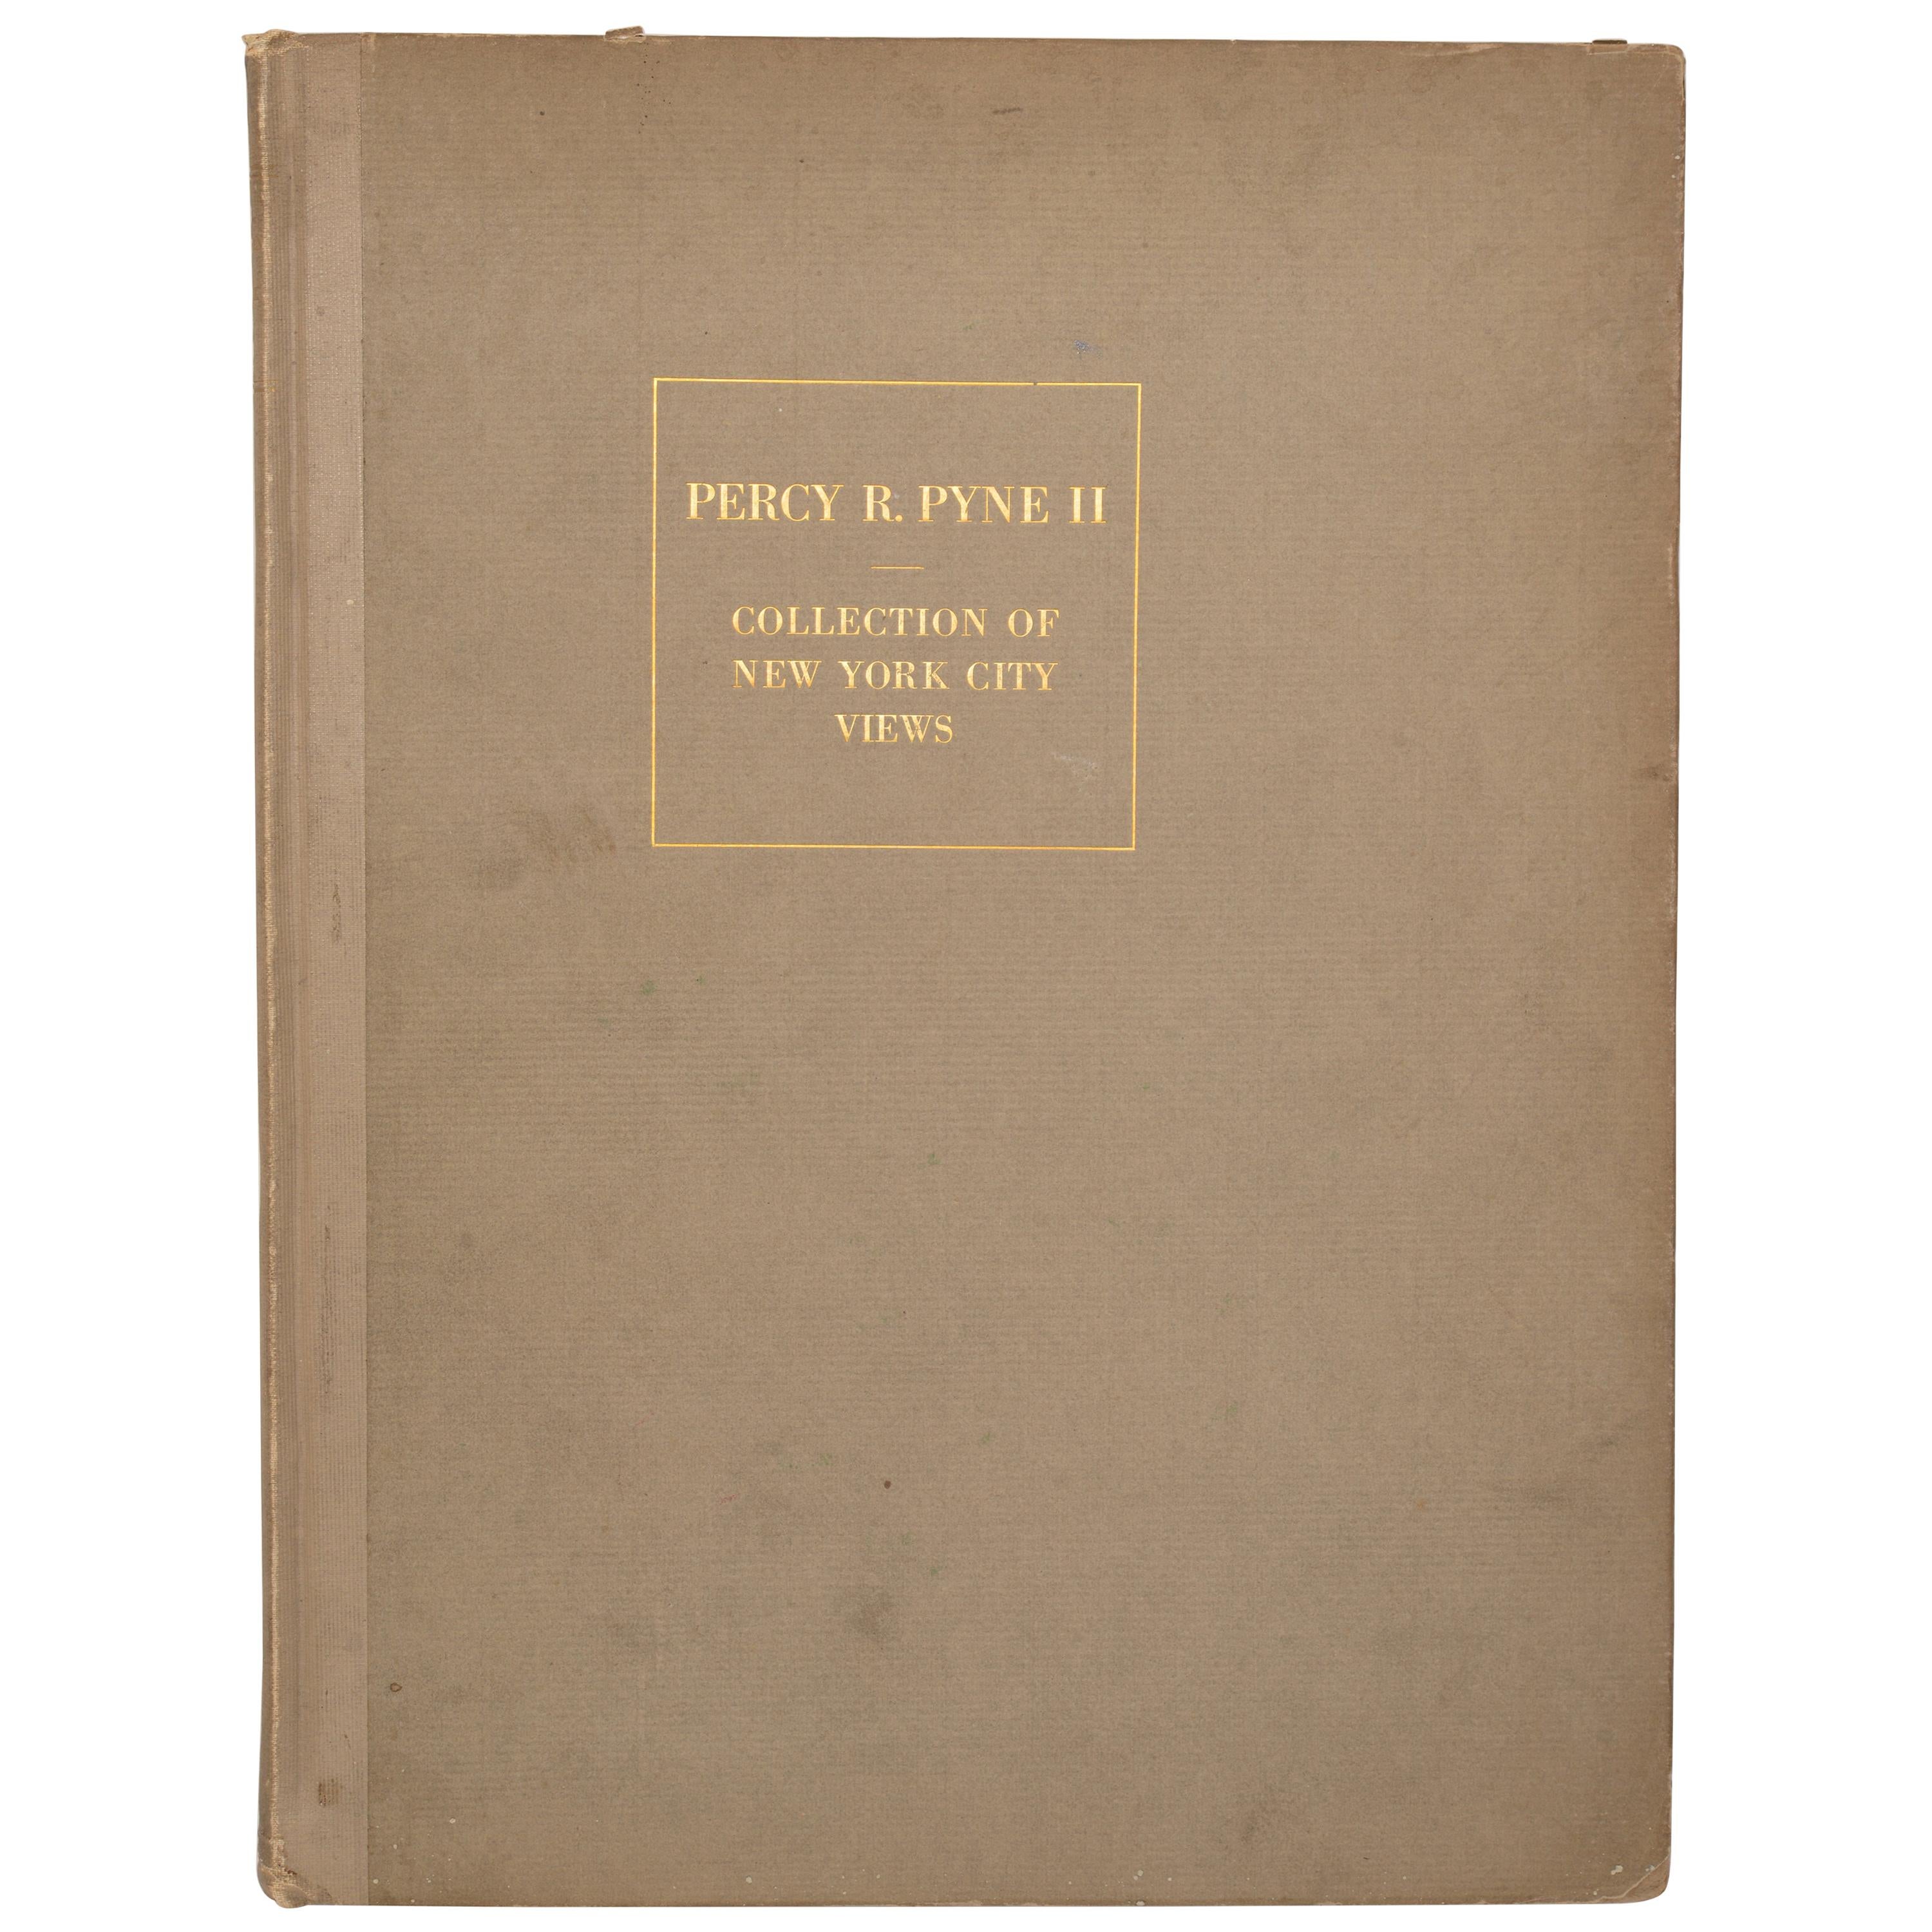 Katalog mit eingravierten Ansichten, Planen, usw., von New York City, 1. Ed.